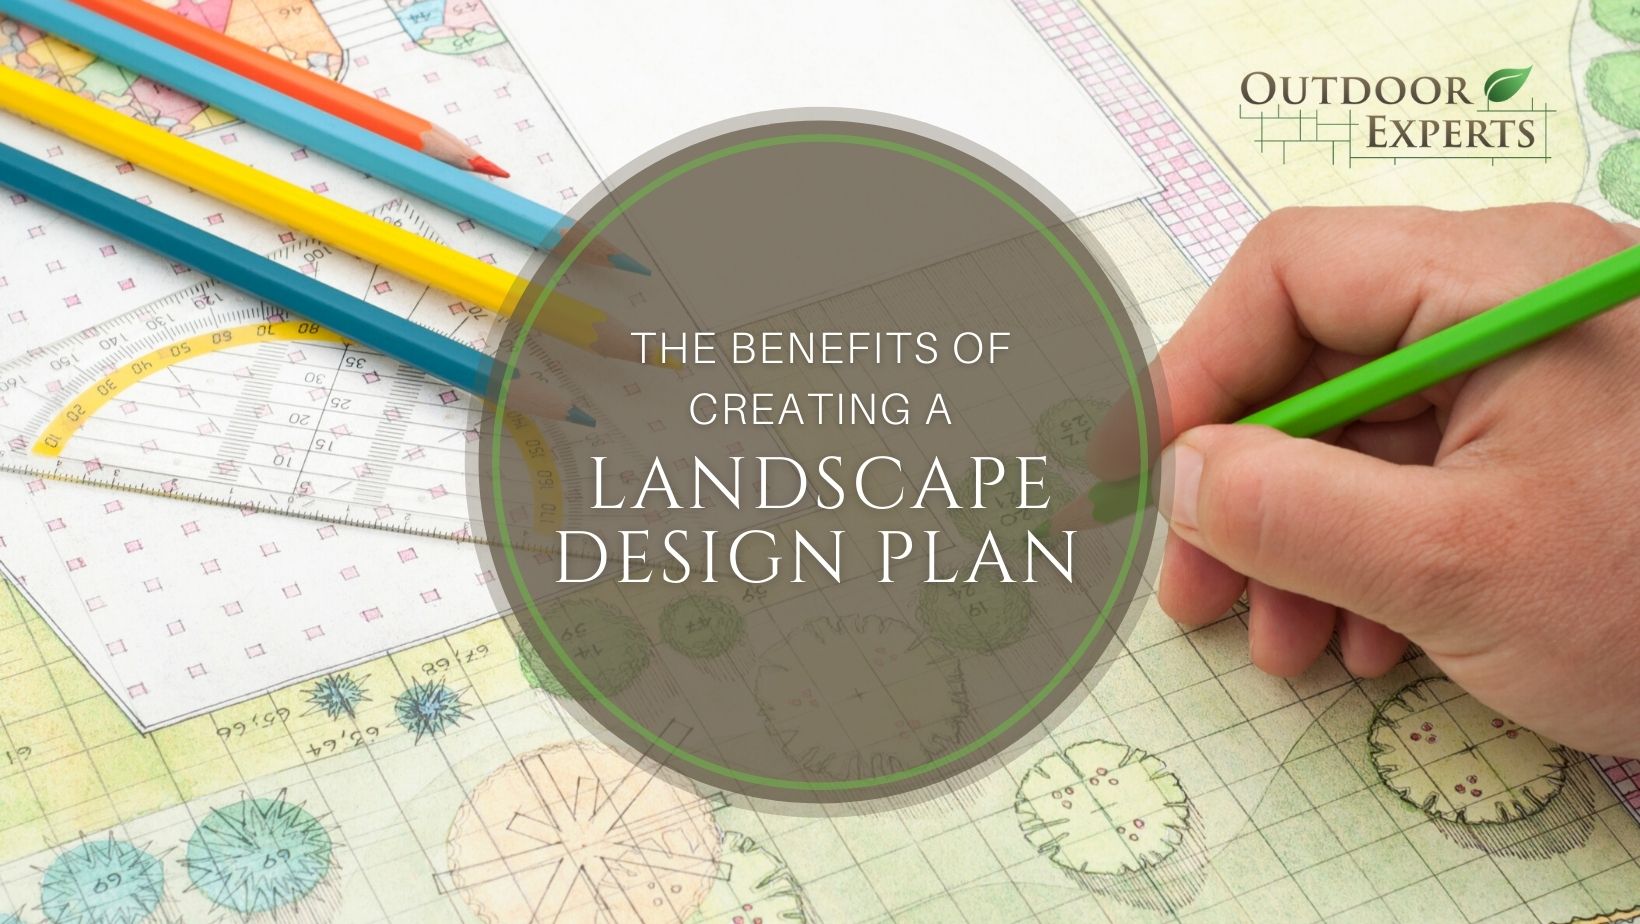 A plan for landscape design